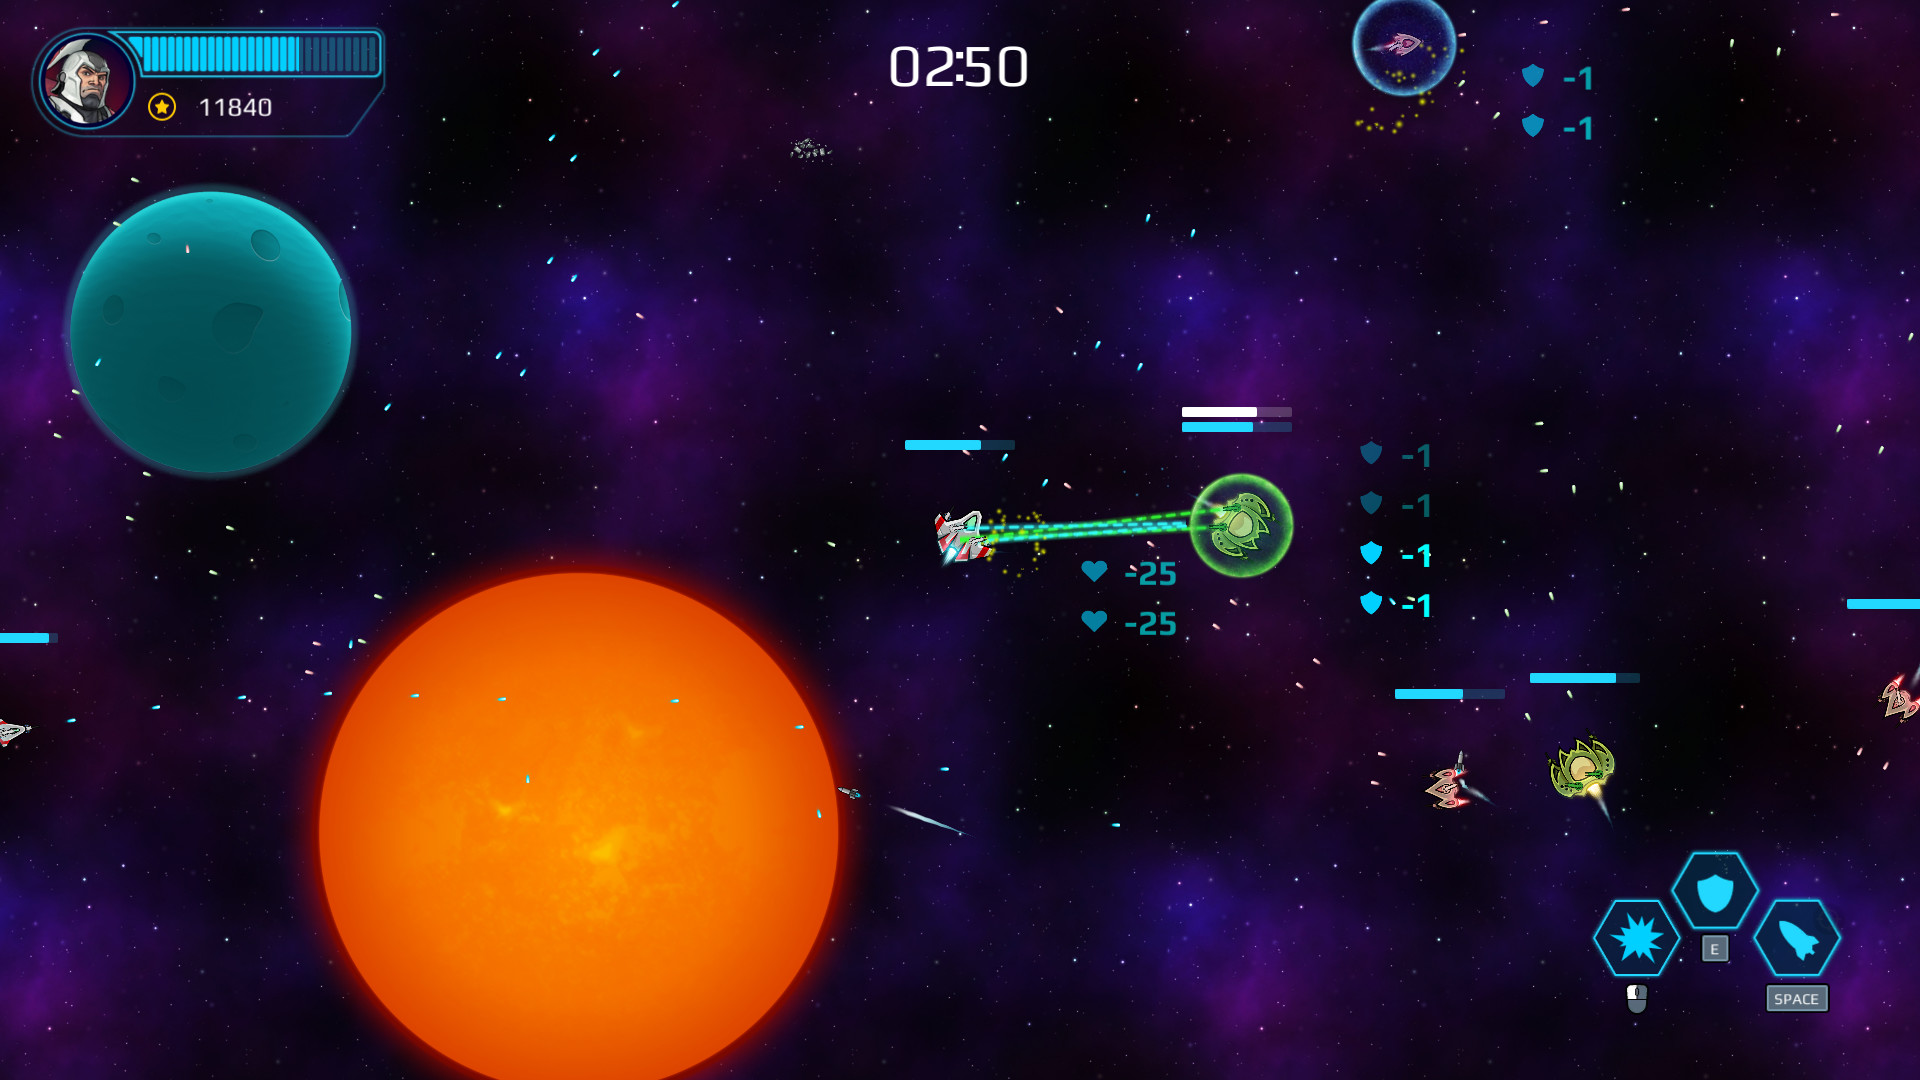 Spacepowers screenshot